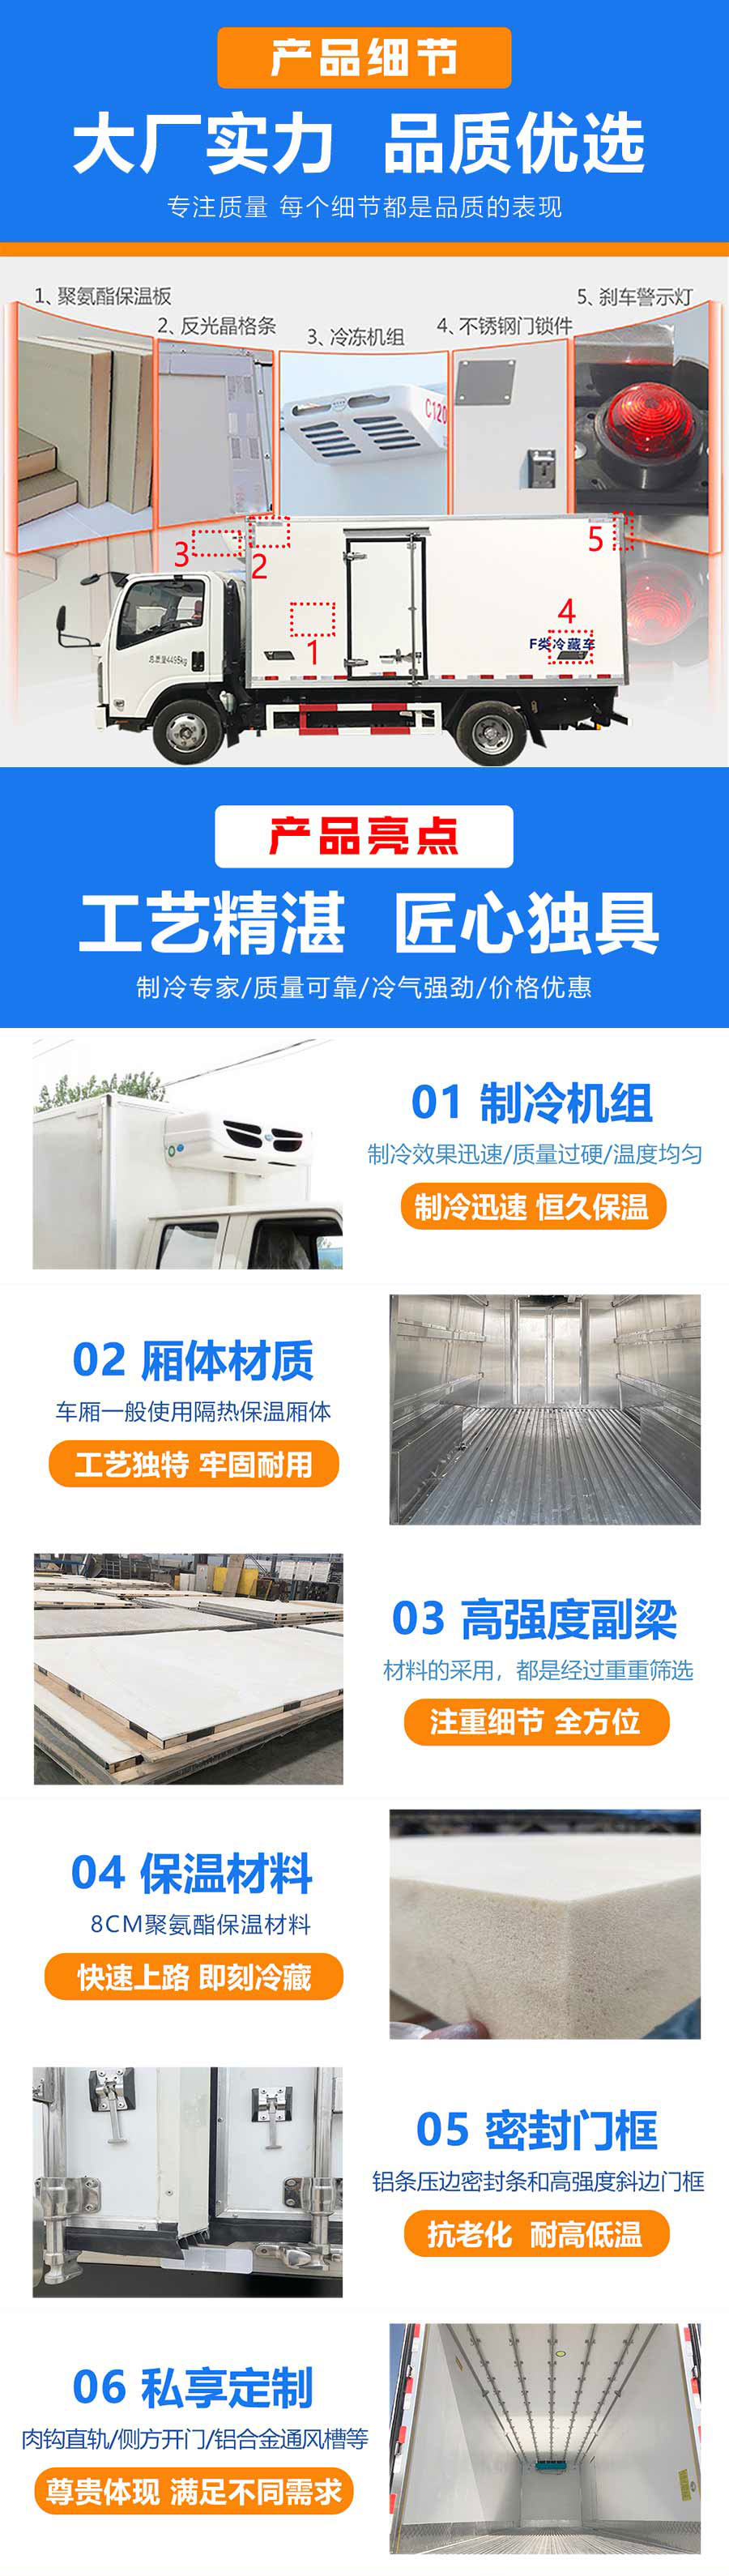 国六 江铃凯运4.2米蓝牌冷藏车